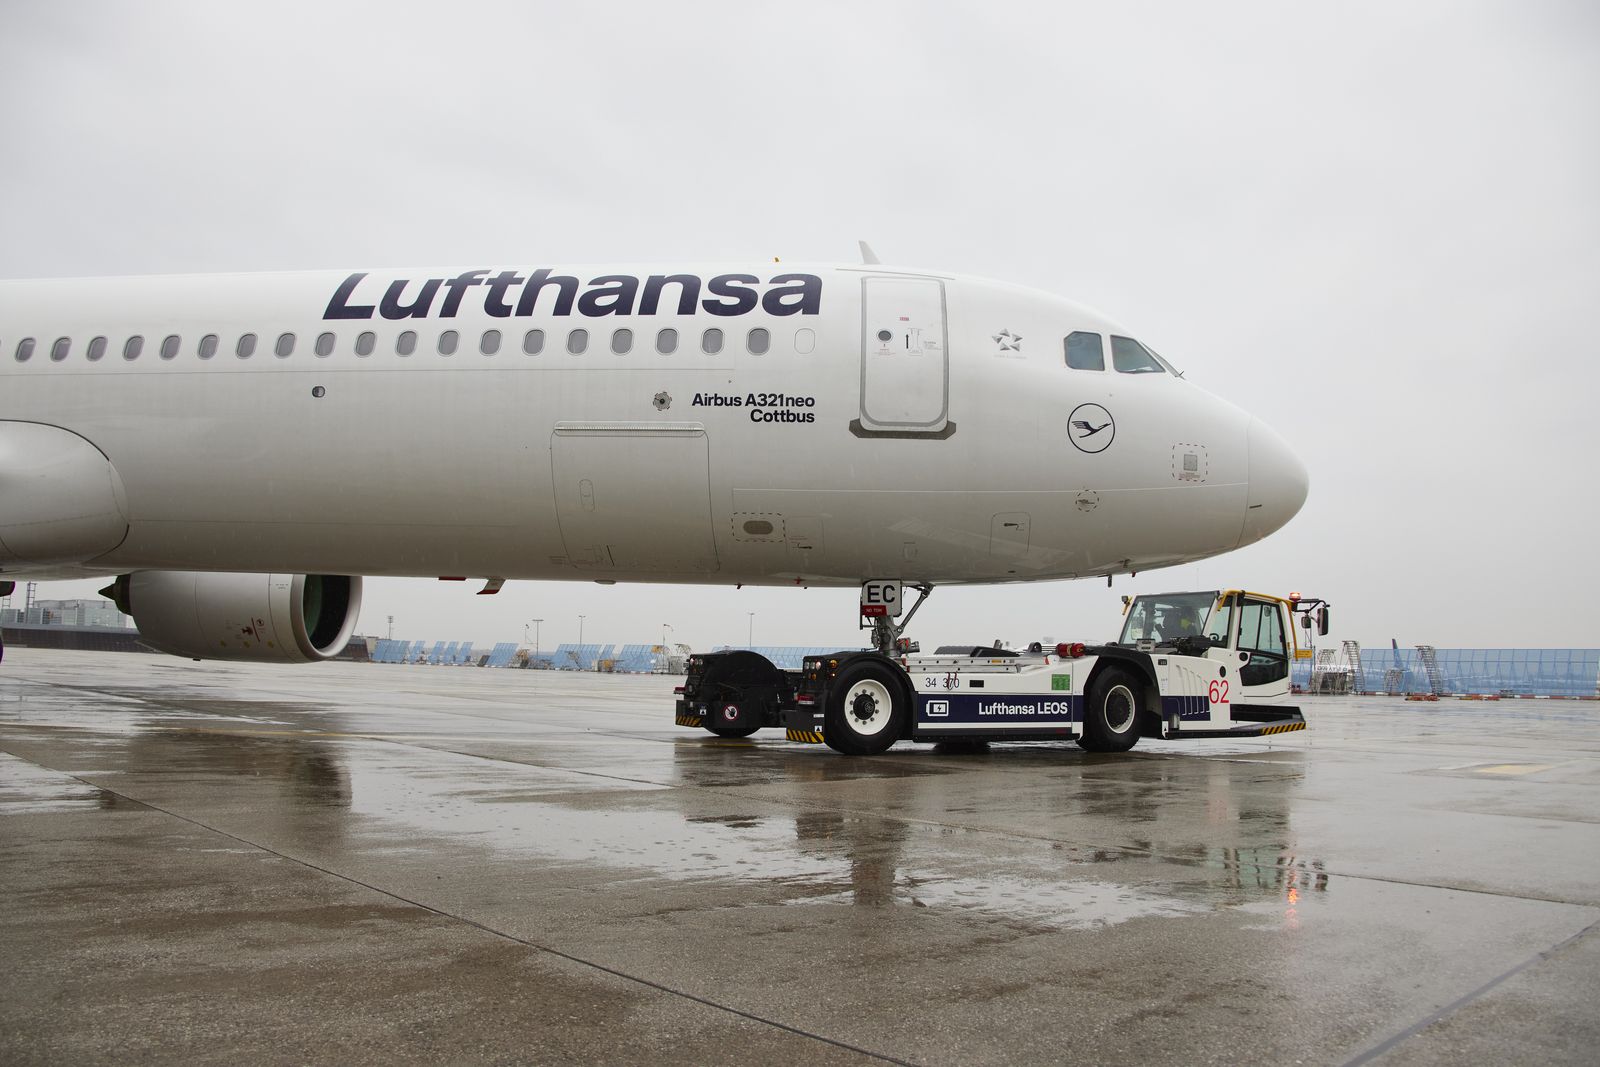 Lufthansa-Flug landet nach Triebwerkspanne in Zagreb